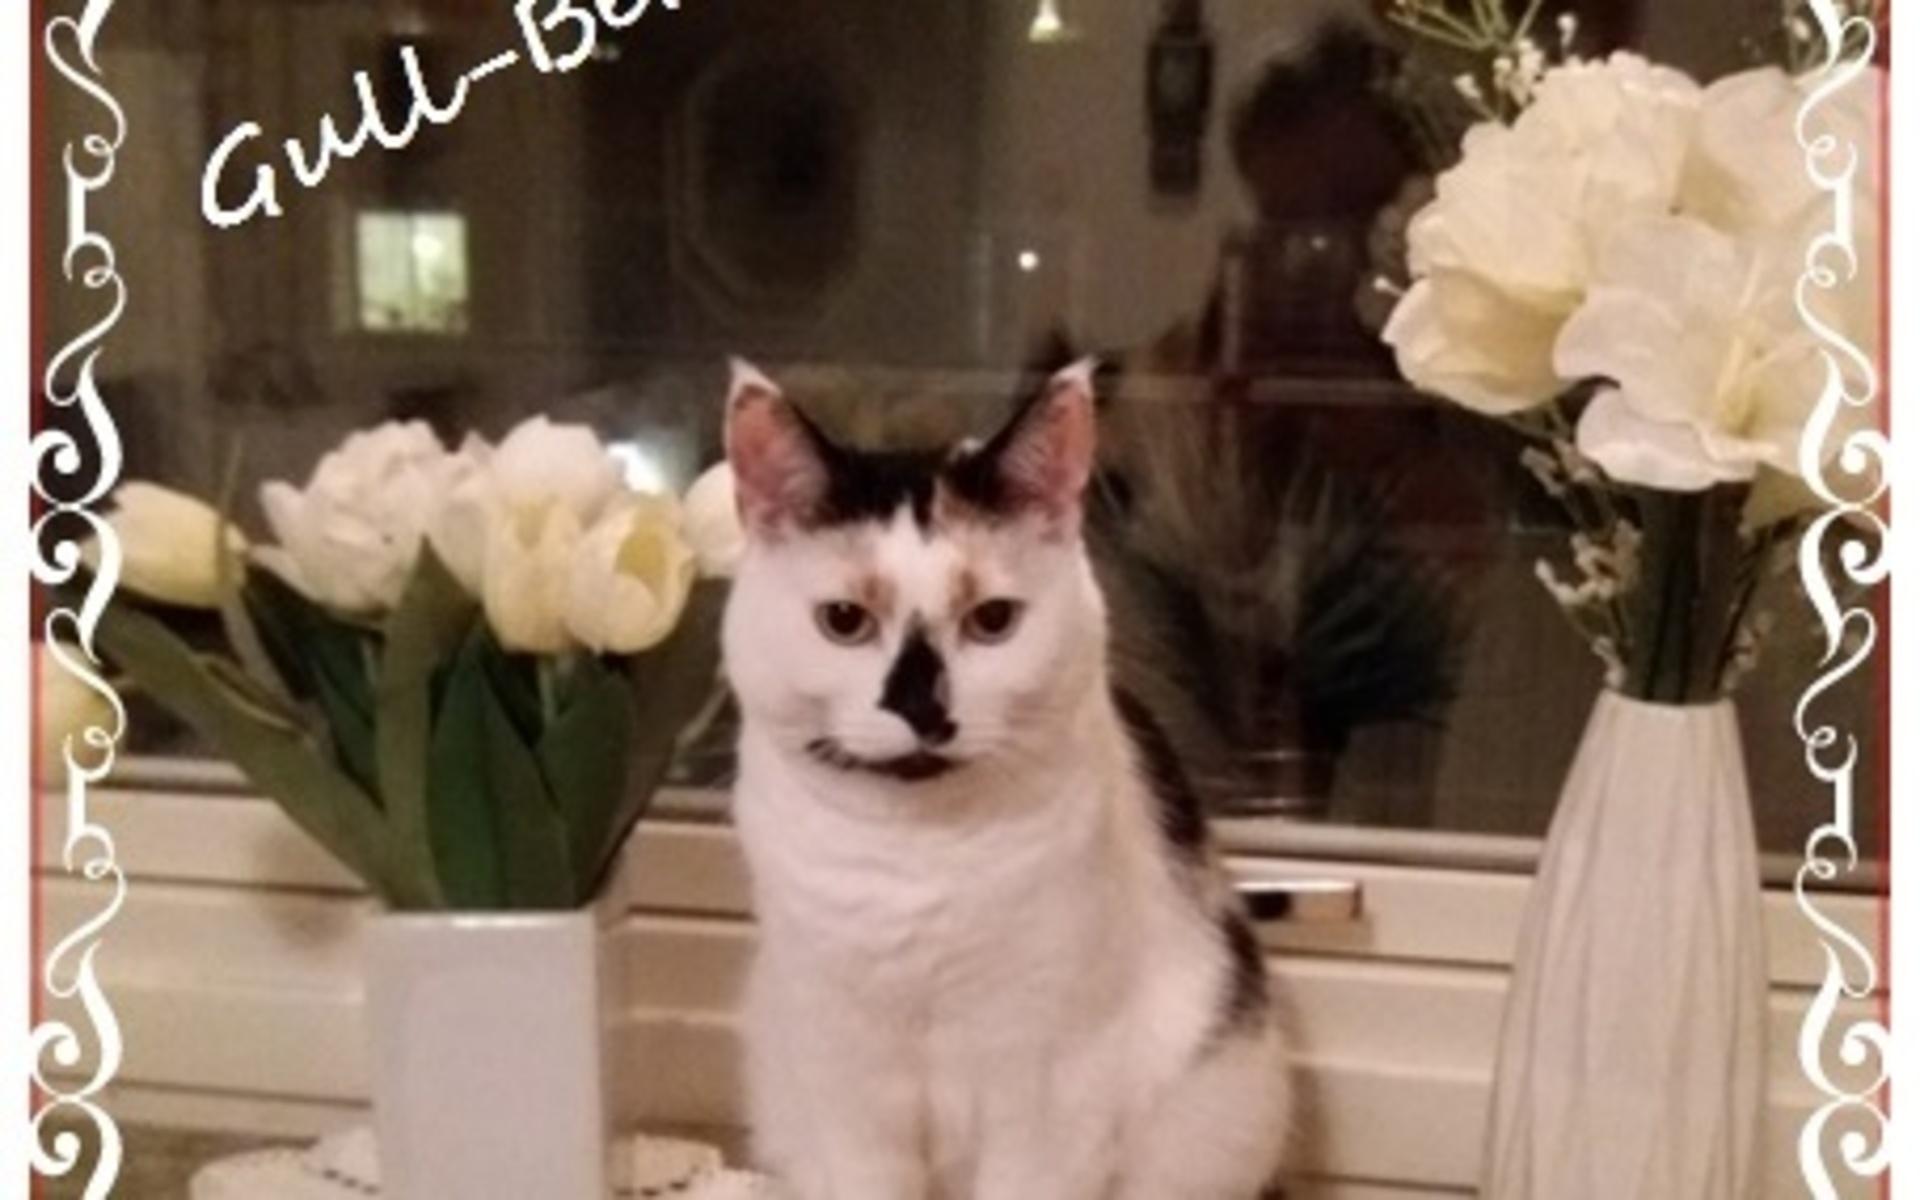 Min underbara katt Berit, även kallad Gull-Berit, kom in i mitt liv för cirka 1 år sedan. Såg henne på en Blocket-annons och jag föll som en fura, skriver Ingalill Martinsson.